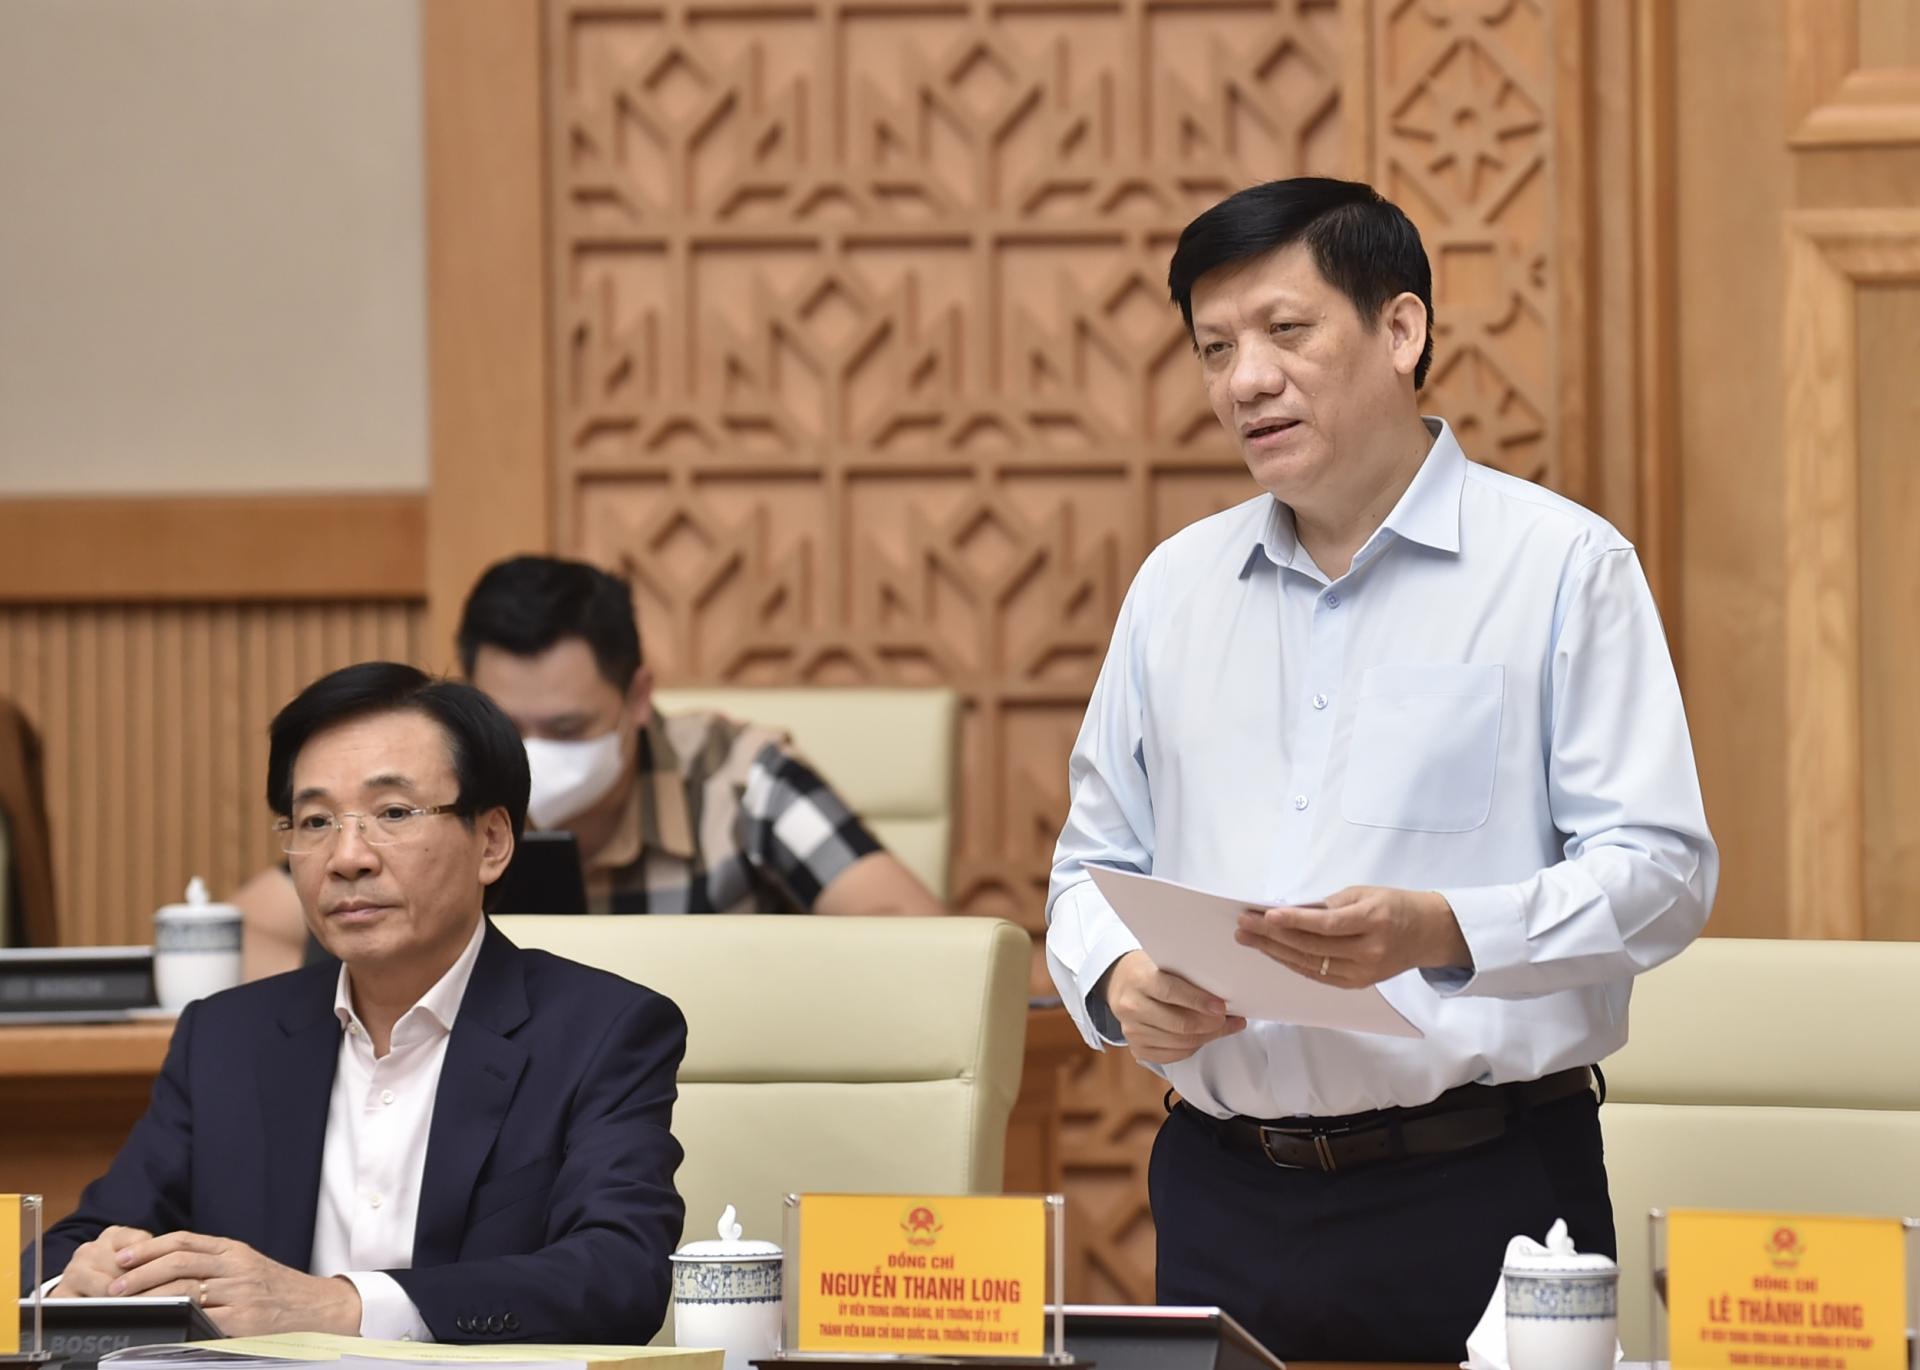 Bộ trưởng Nguyễn Thanh Long: Với kinh nghiệm bước đầu được đúc kết từ thực tiễn phòng chống dịch; năng lực ứng phó của hệ thống y tế ngày một nâng lên. Ảnh: VGP/Nhật Bắc